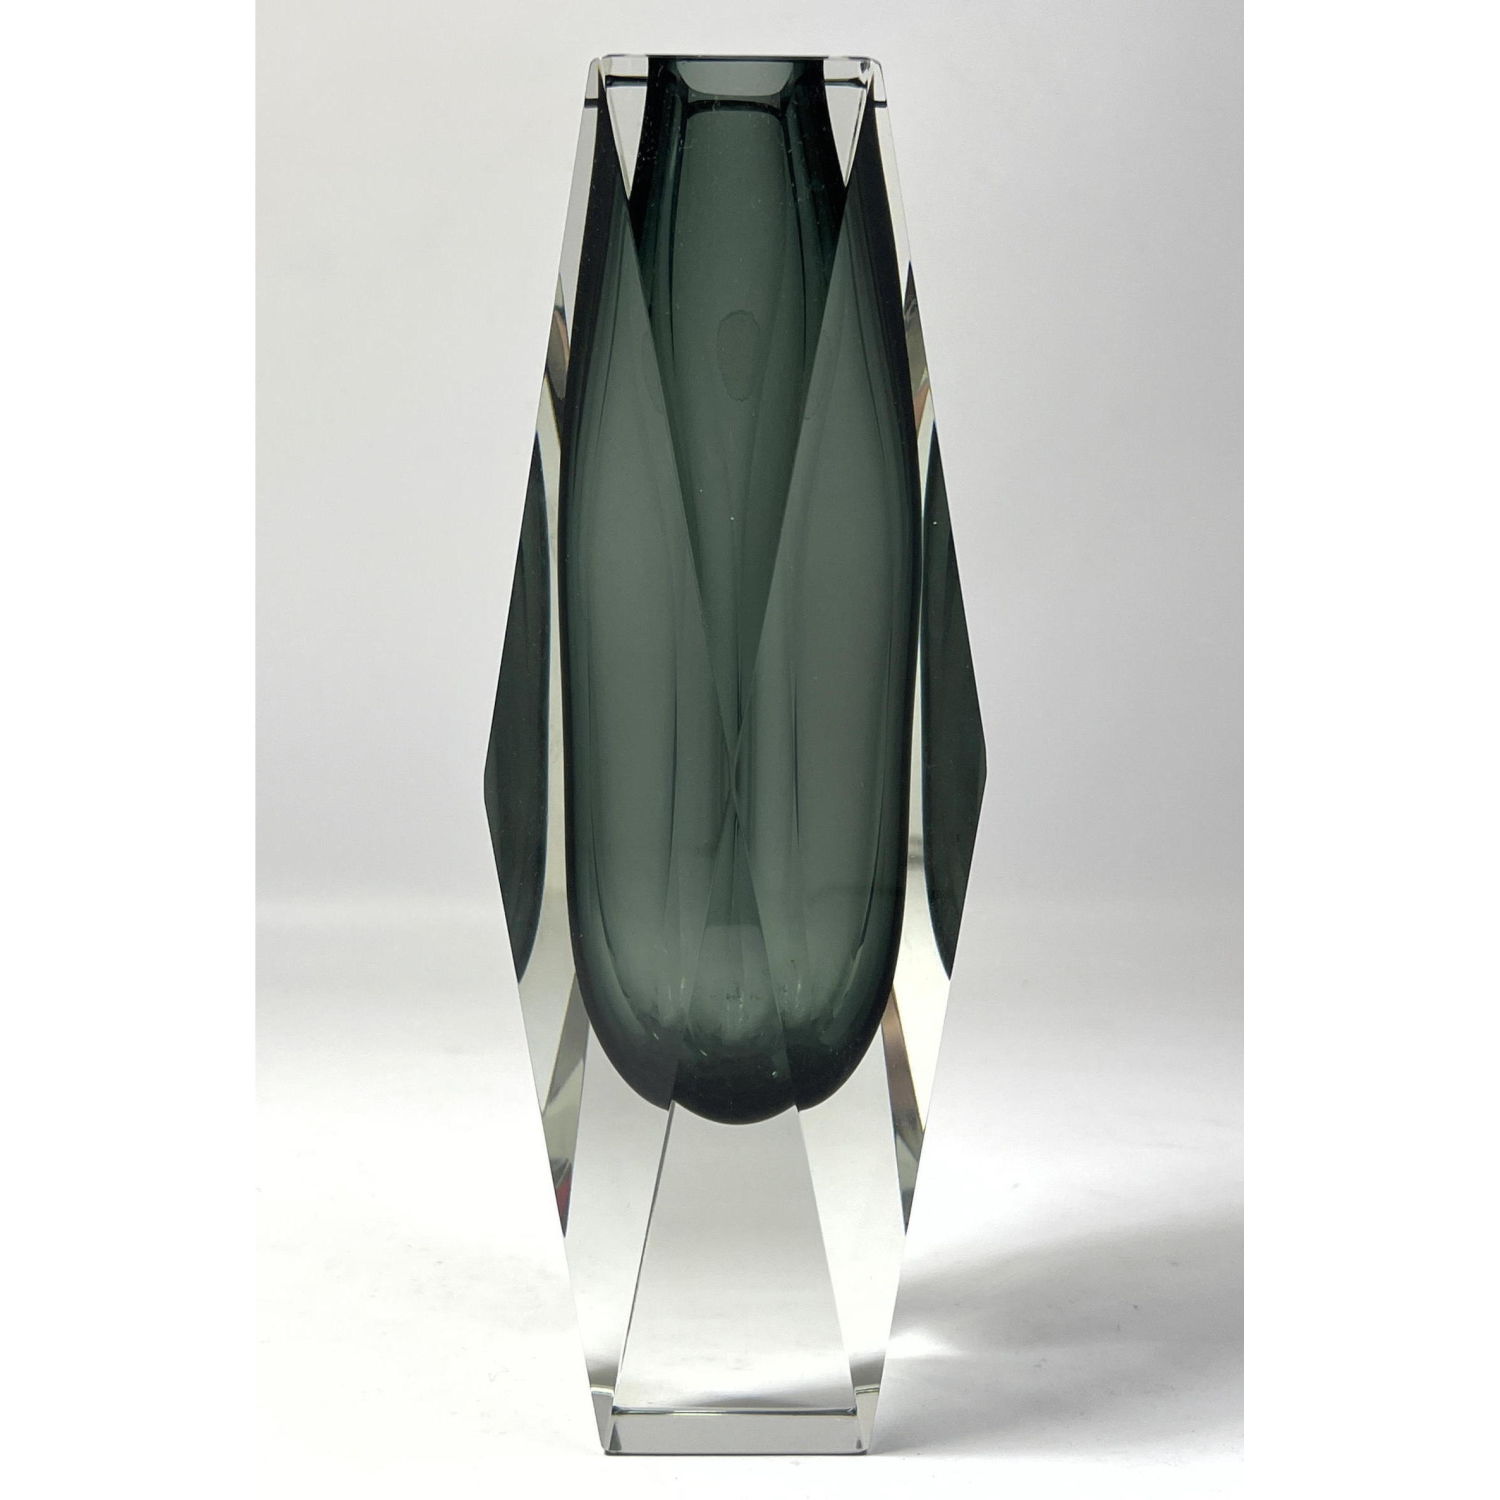 Murano Cased Art Glass Vase Unmarked  2fcde5